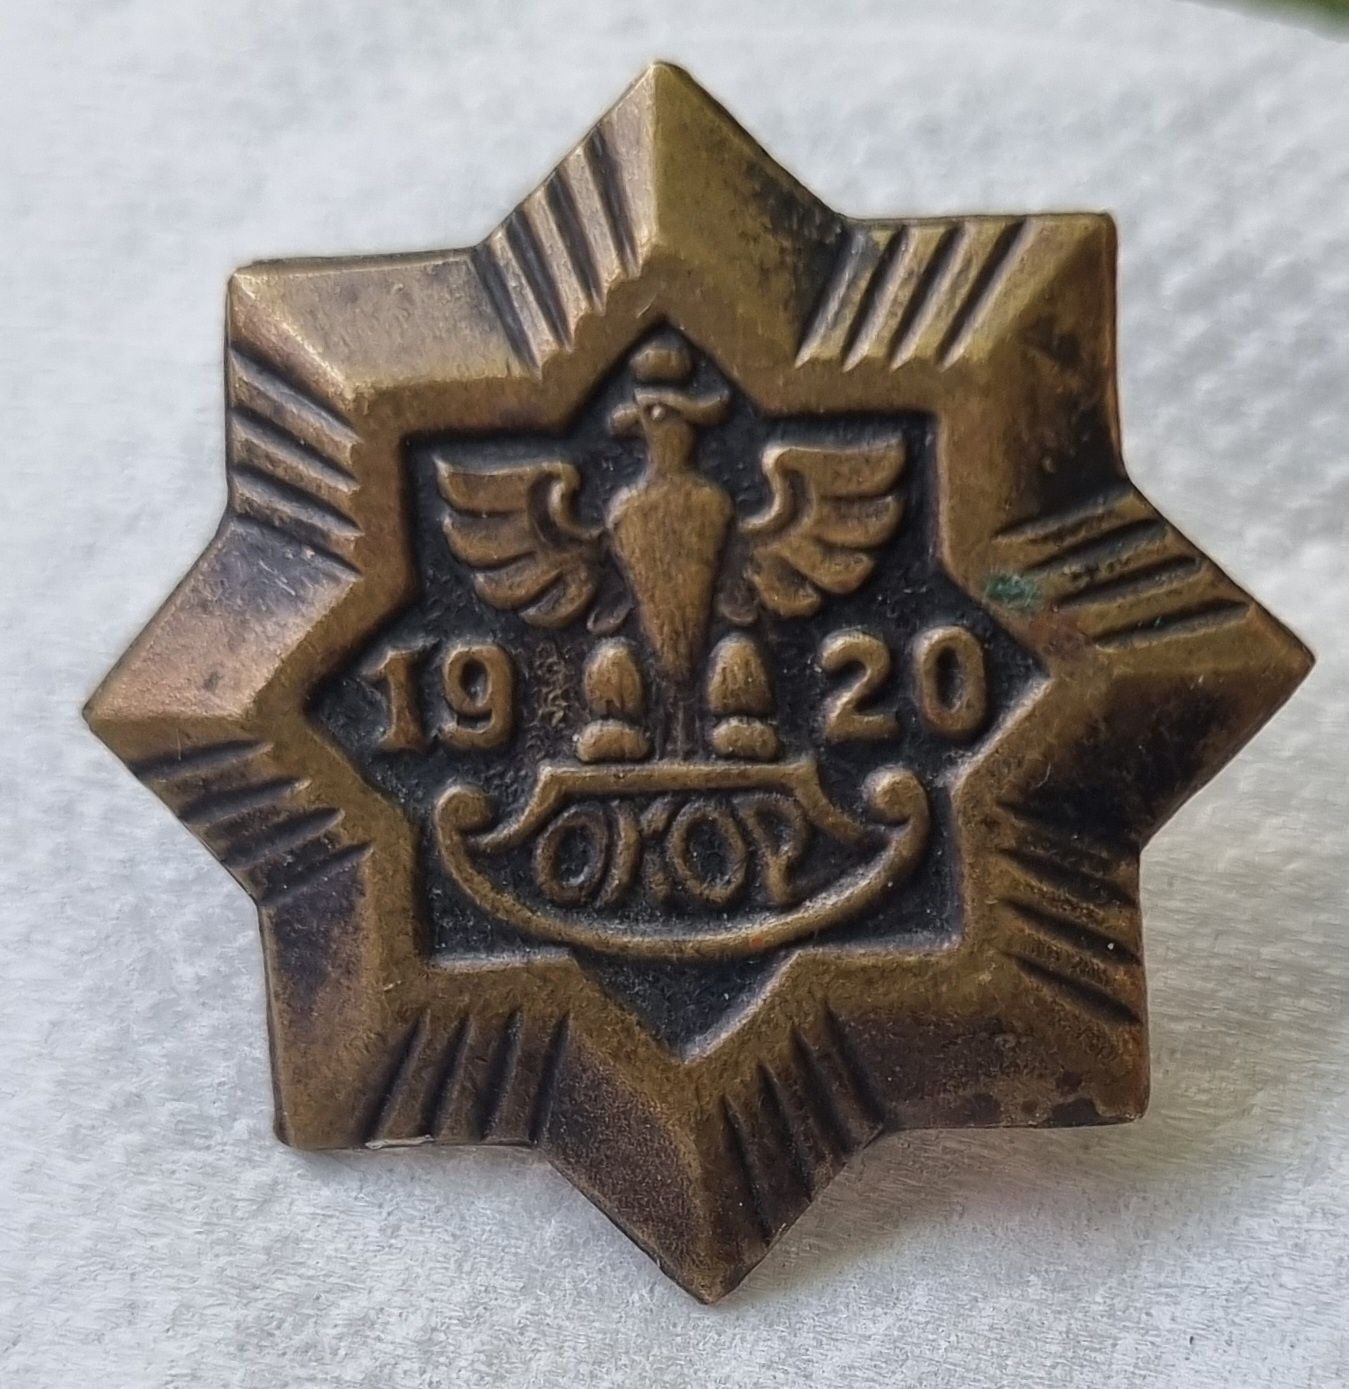 odznaka OKOP 1920 nakrętka